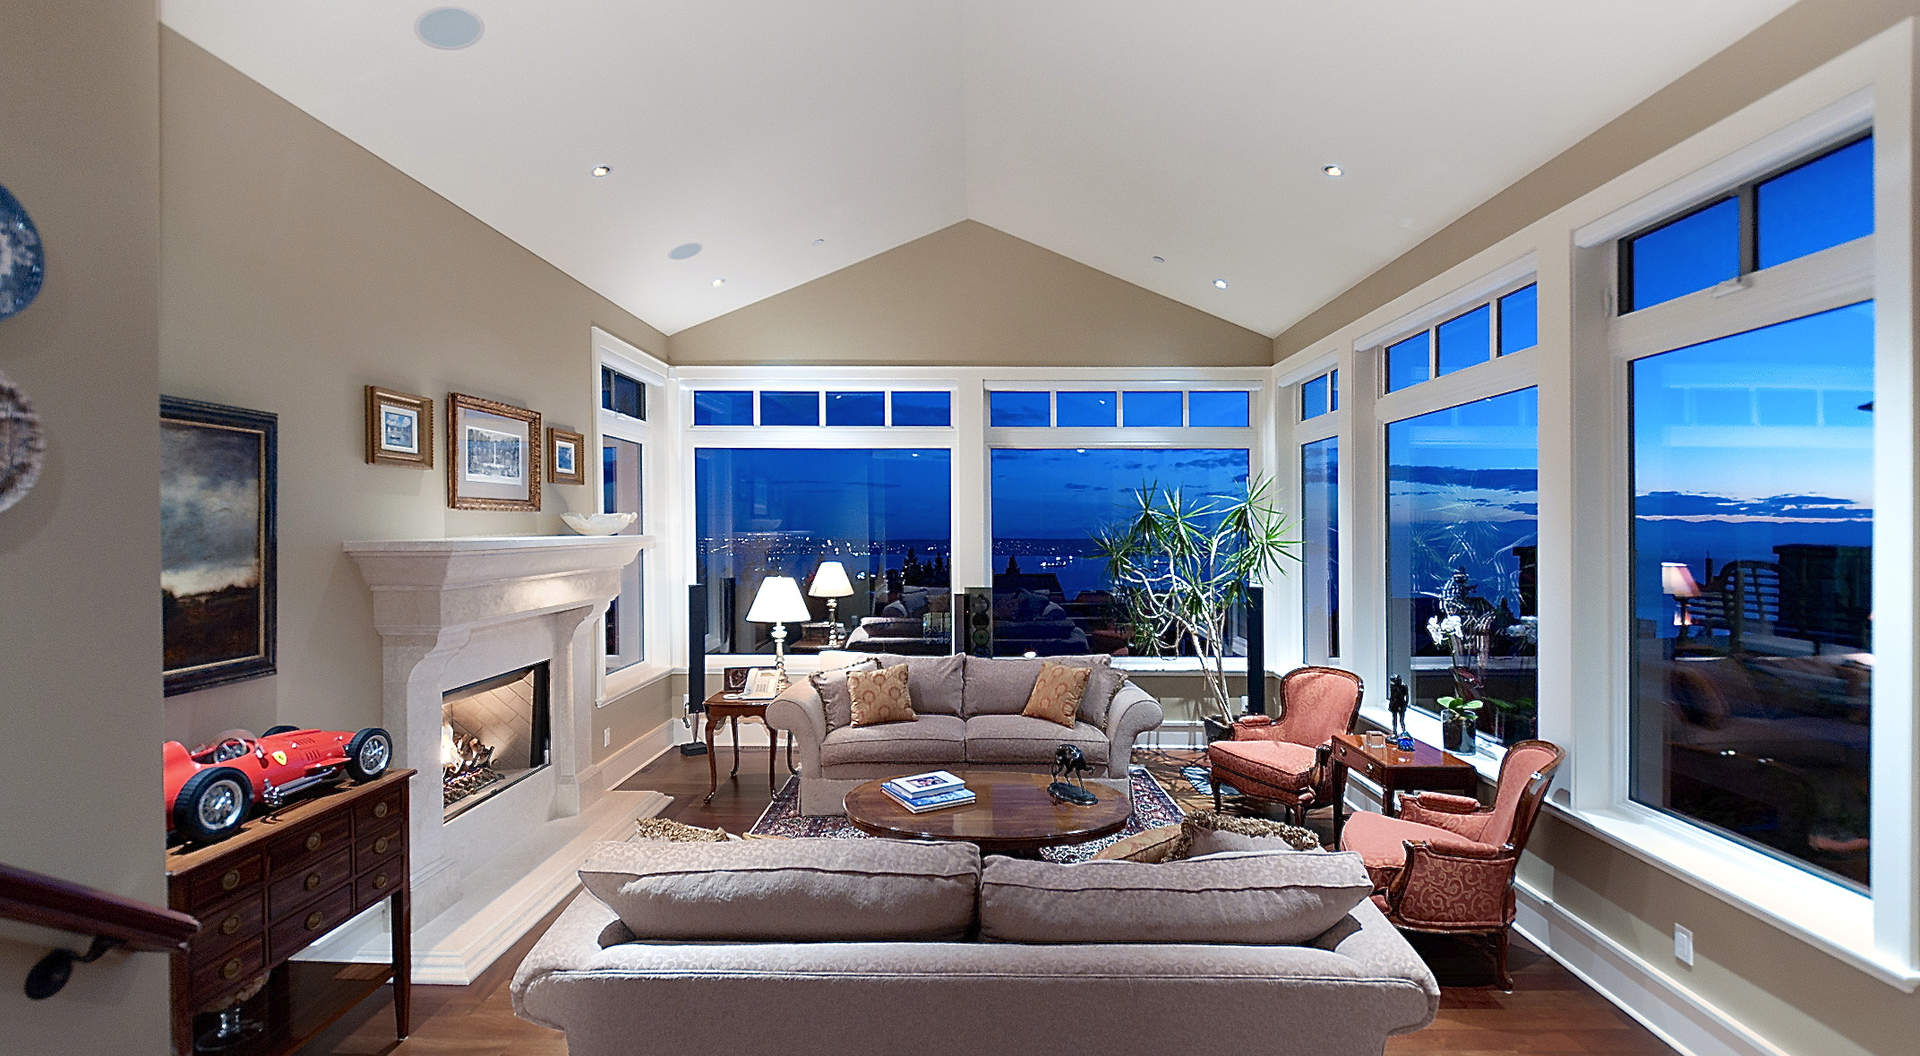 Amplia sala de estar con techos abovedados y ventanales